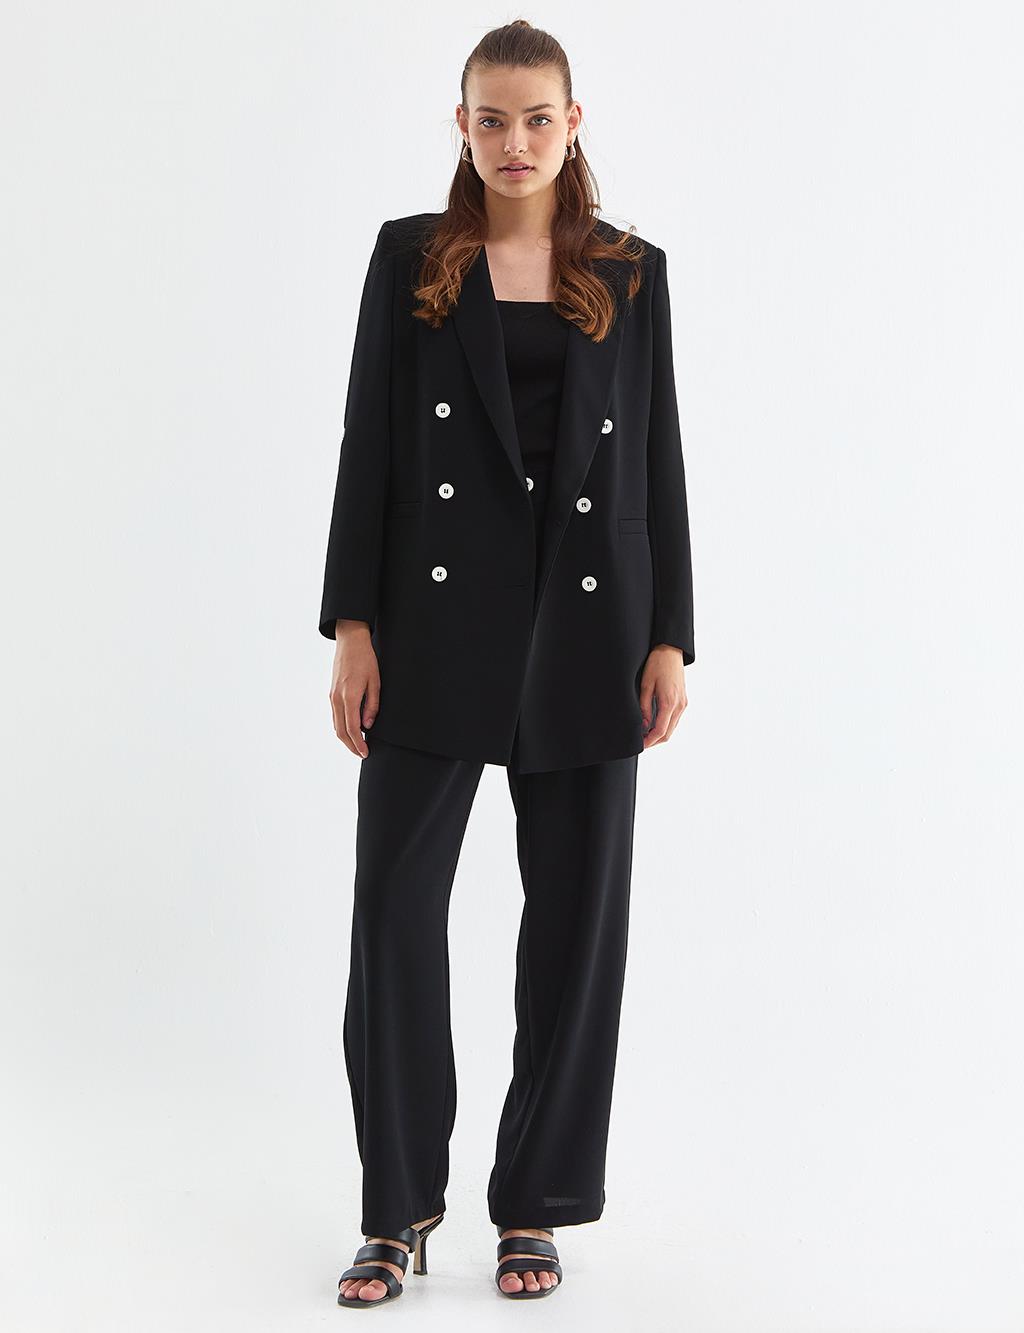 Contrast Buttoned Suit Black